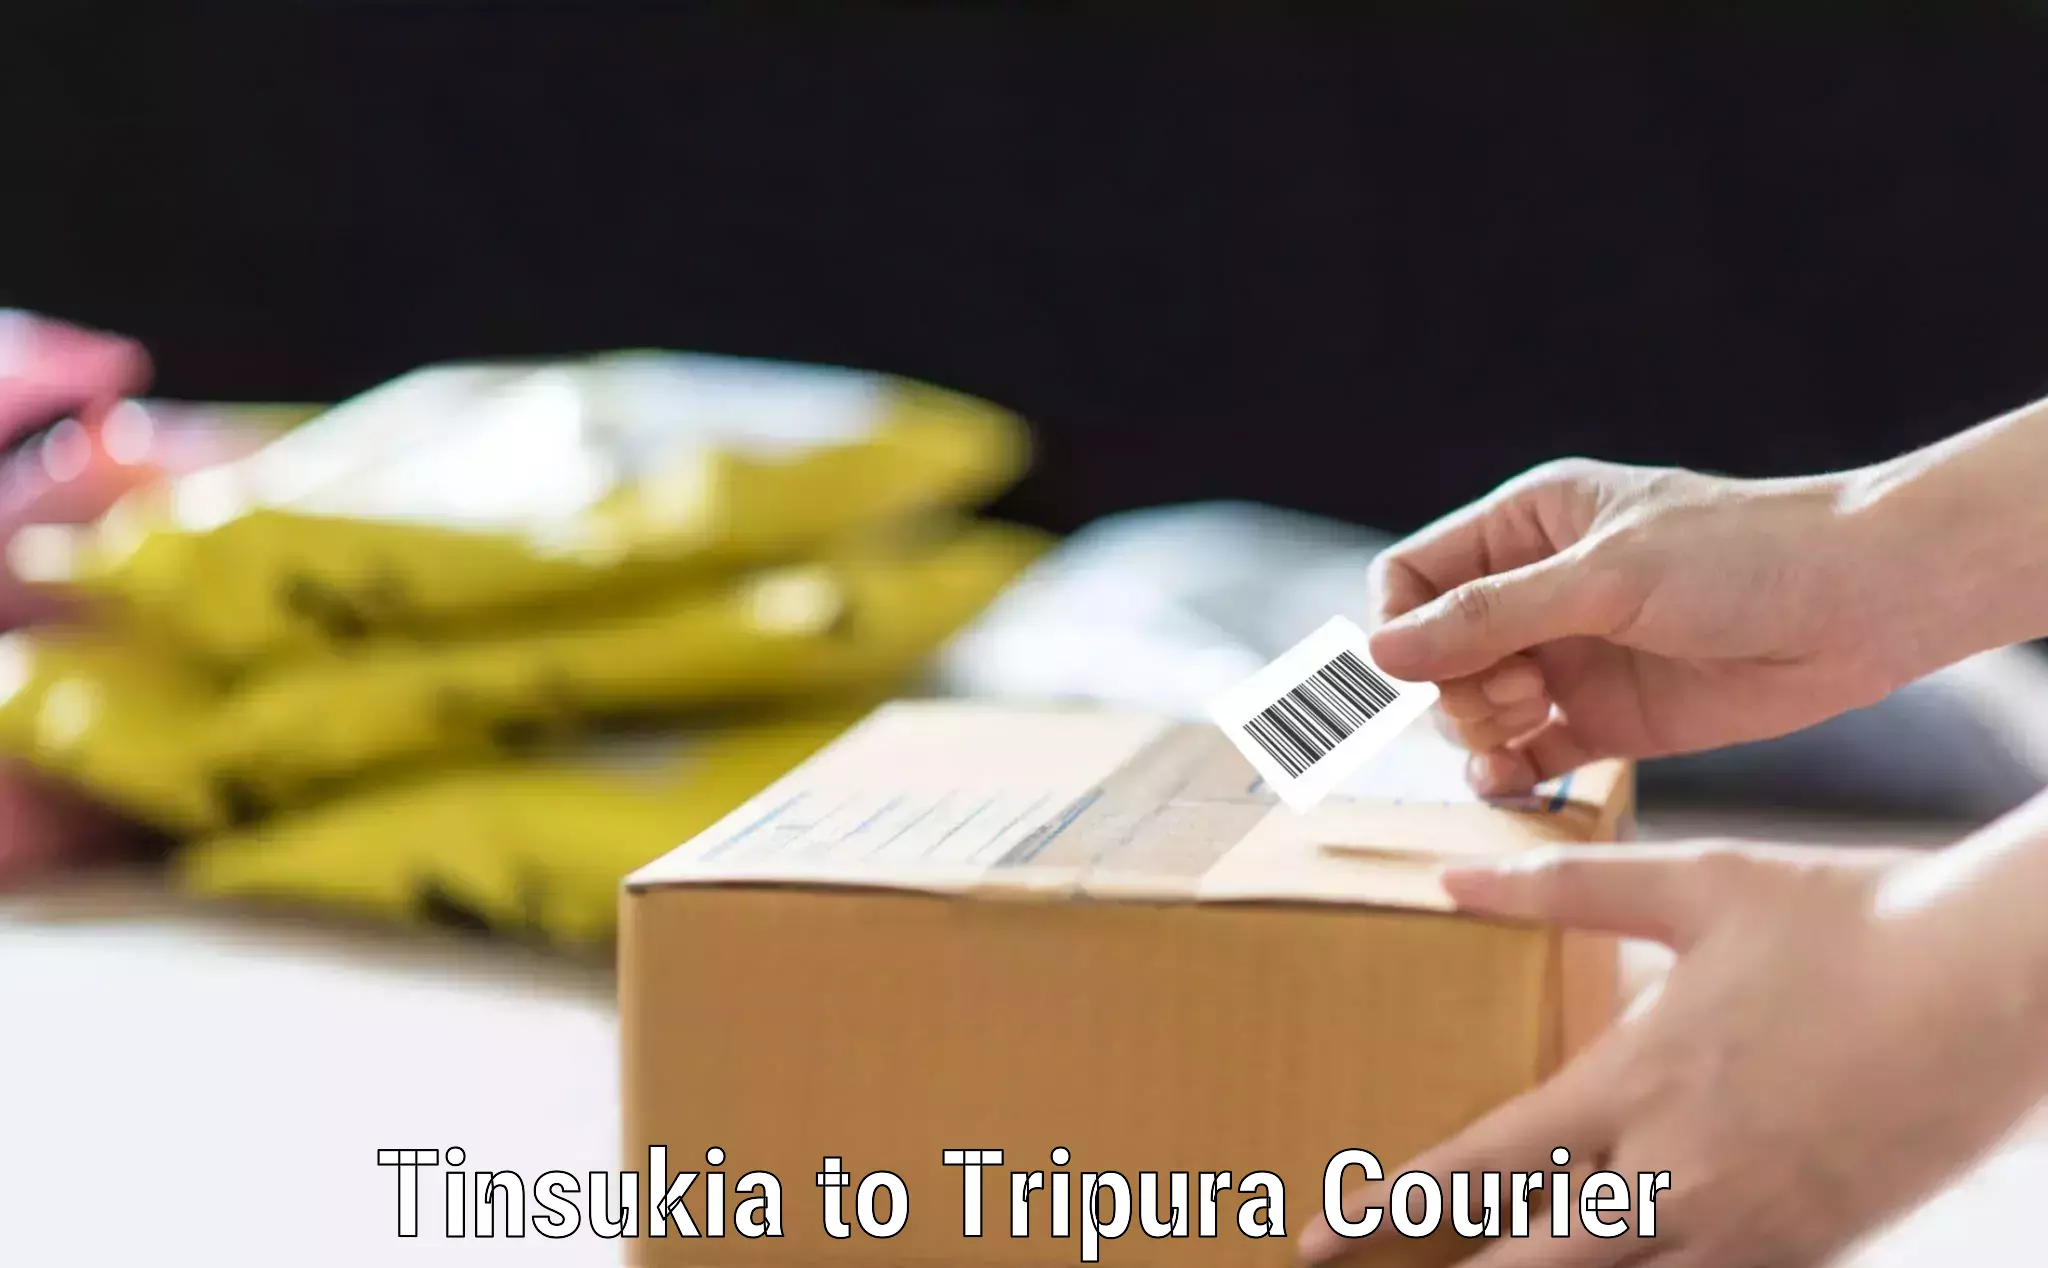 Hassle-free luggage shipping Tinsukia to Kailashahar